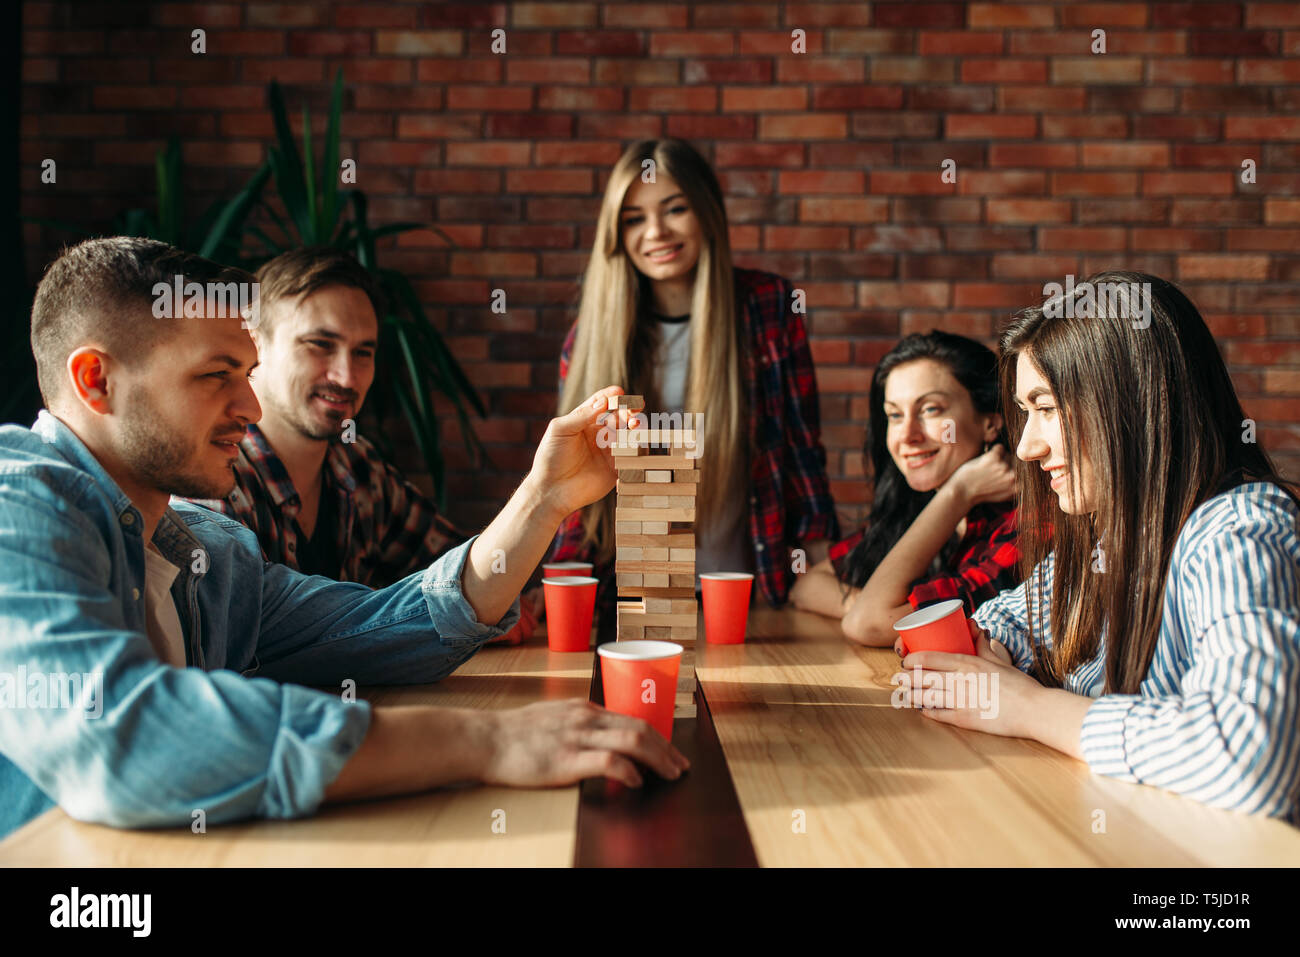 Lächelnd Freunde spielt Tabelle Spiel zu Hause, selektiver Fokus auf Turm. Brettspiel mit Holzklötzen, die hohe Konzentration, Unterhaltung für funn Stockfoto